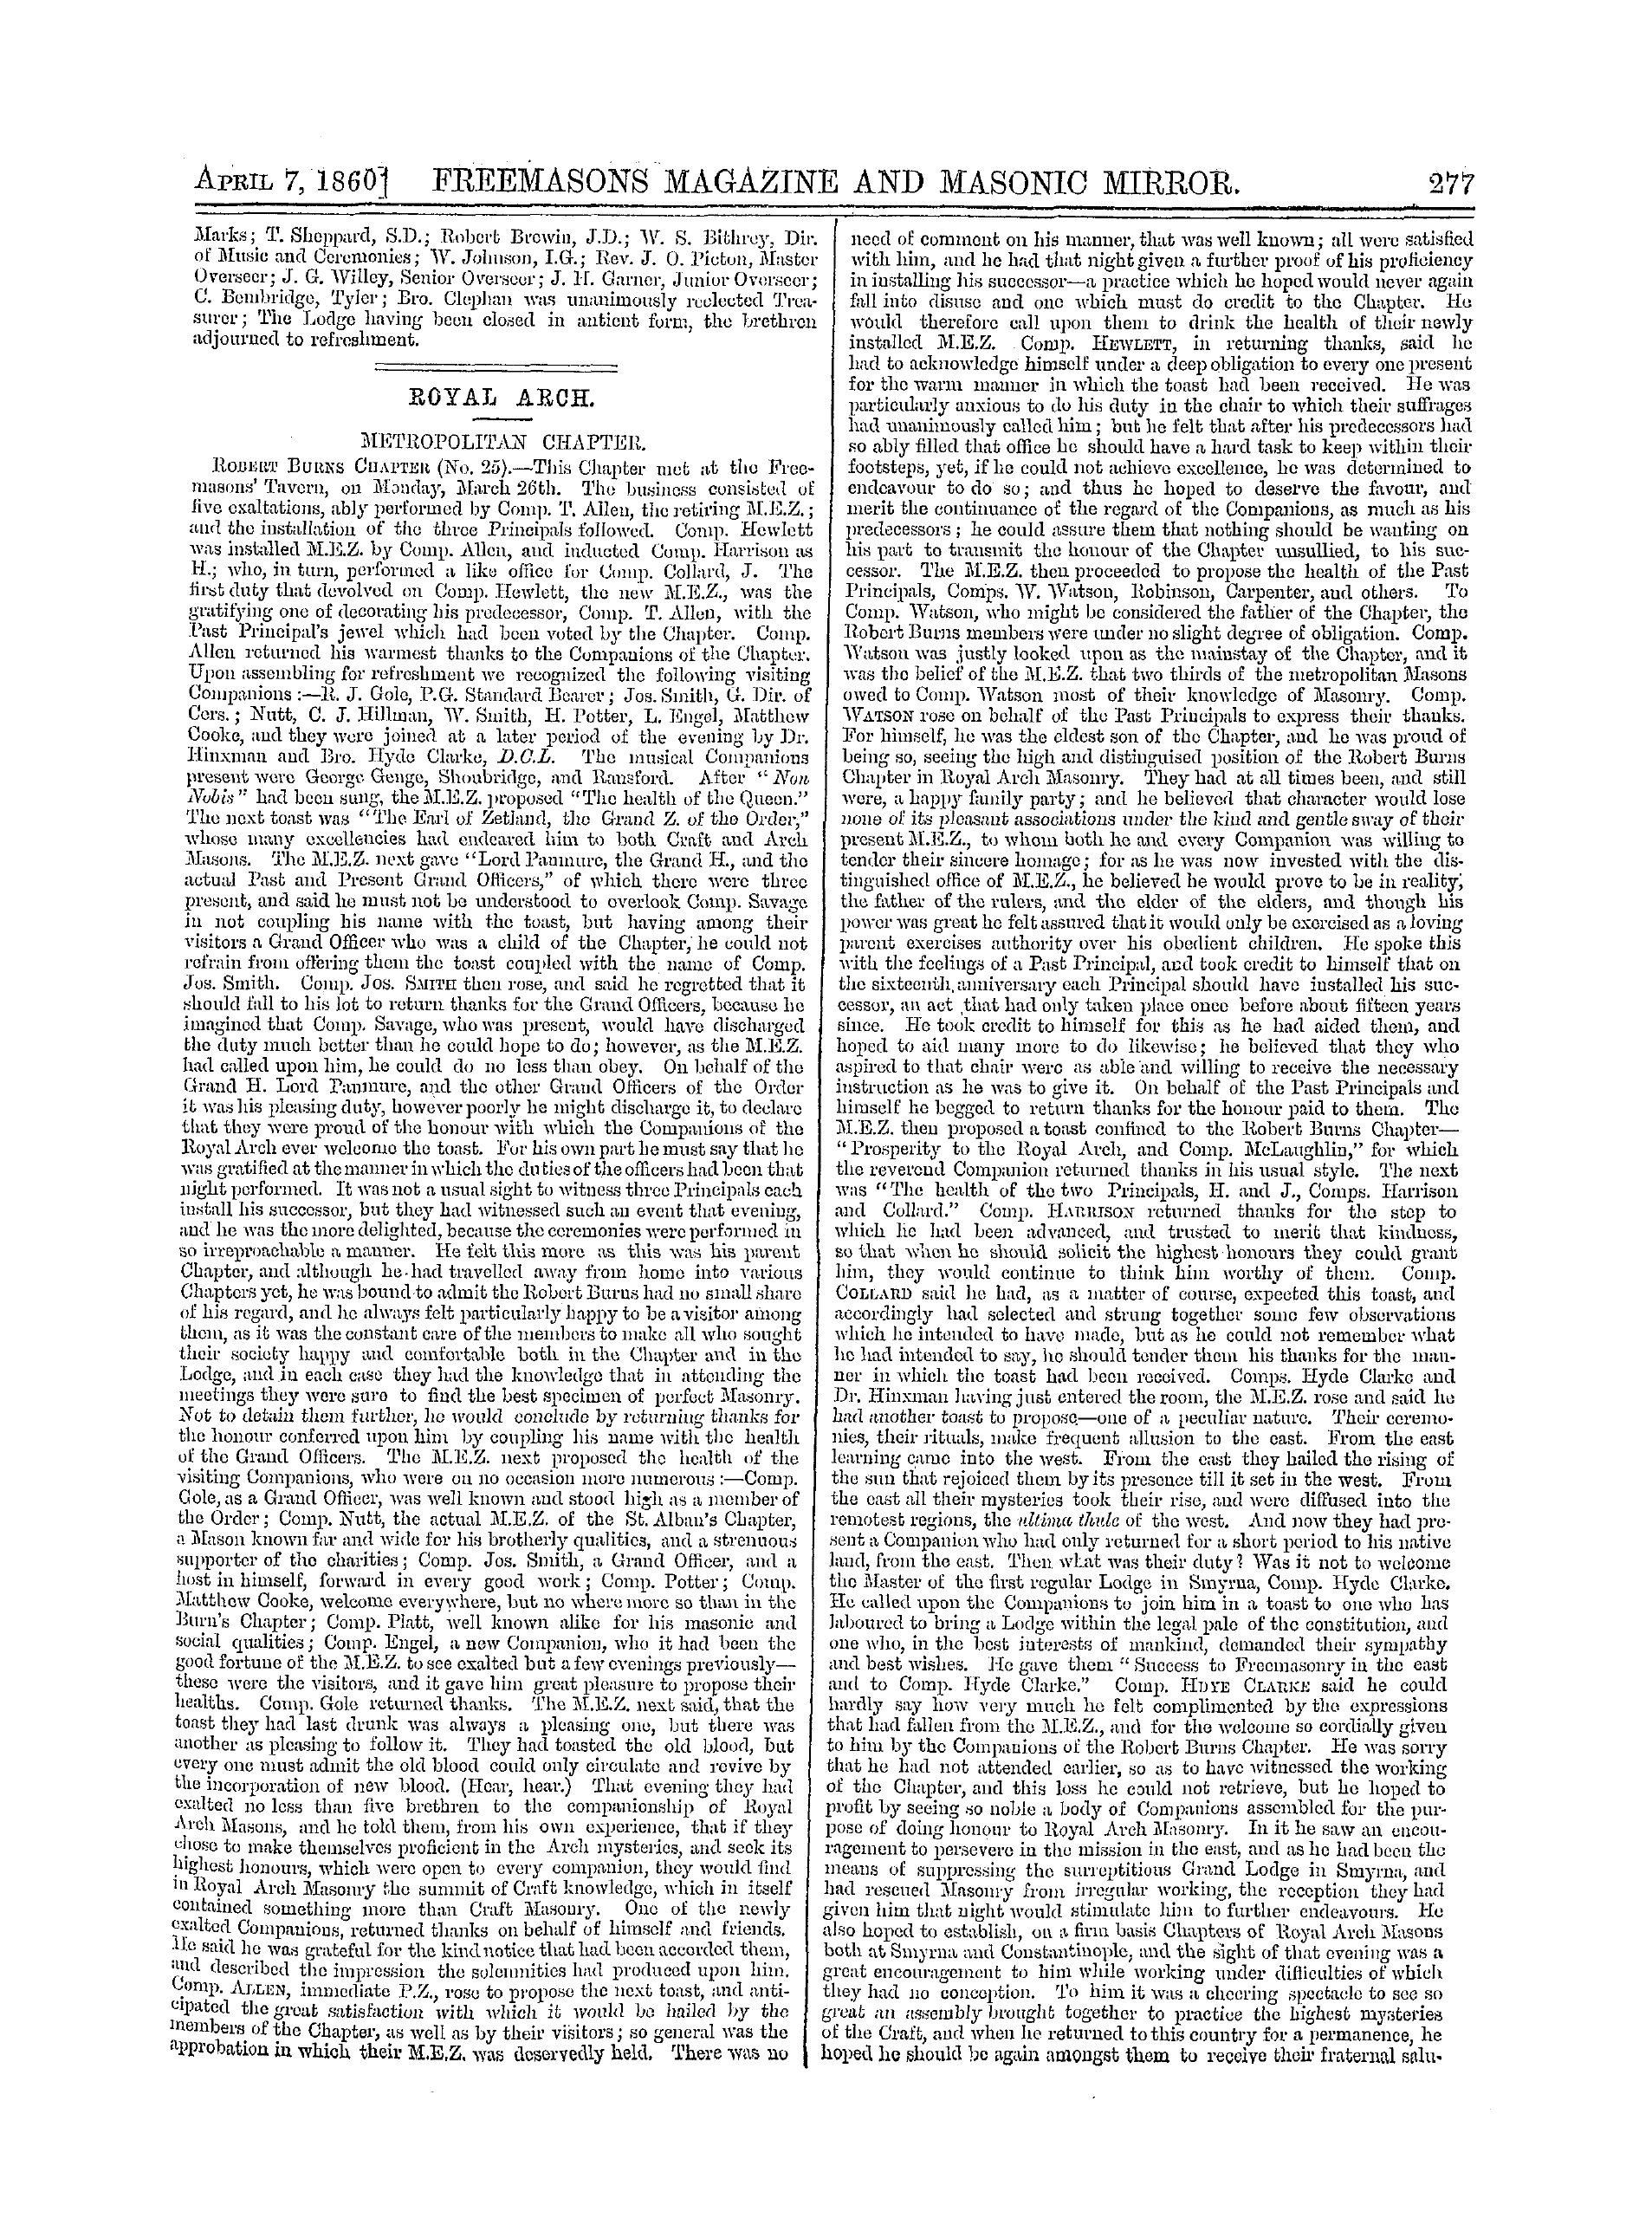 The Freemasons' Monthly Magazine: 1860-04-07 - Mark Masonry.